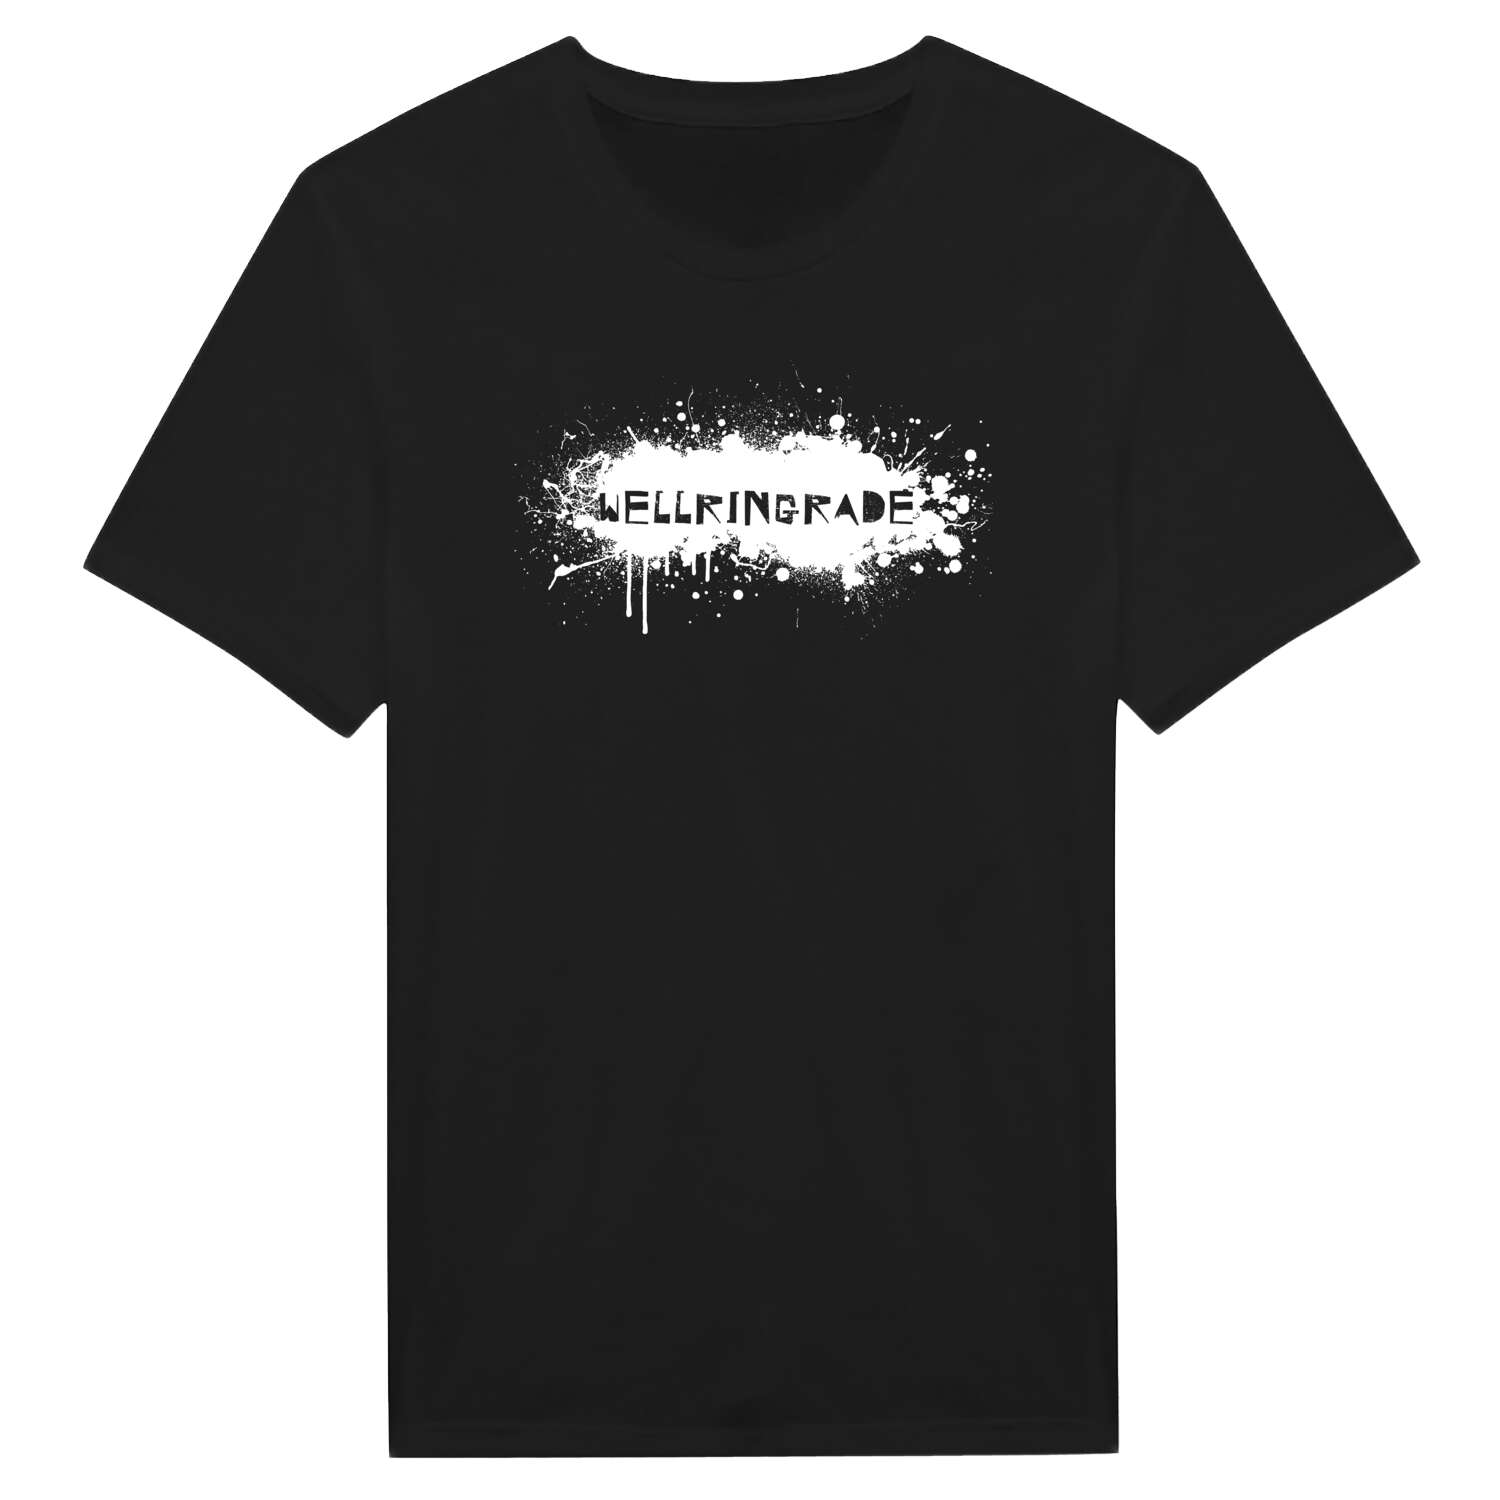 Wellringrade T-Shirt »Paint Splash Punk«